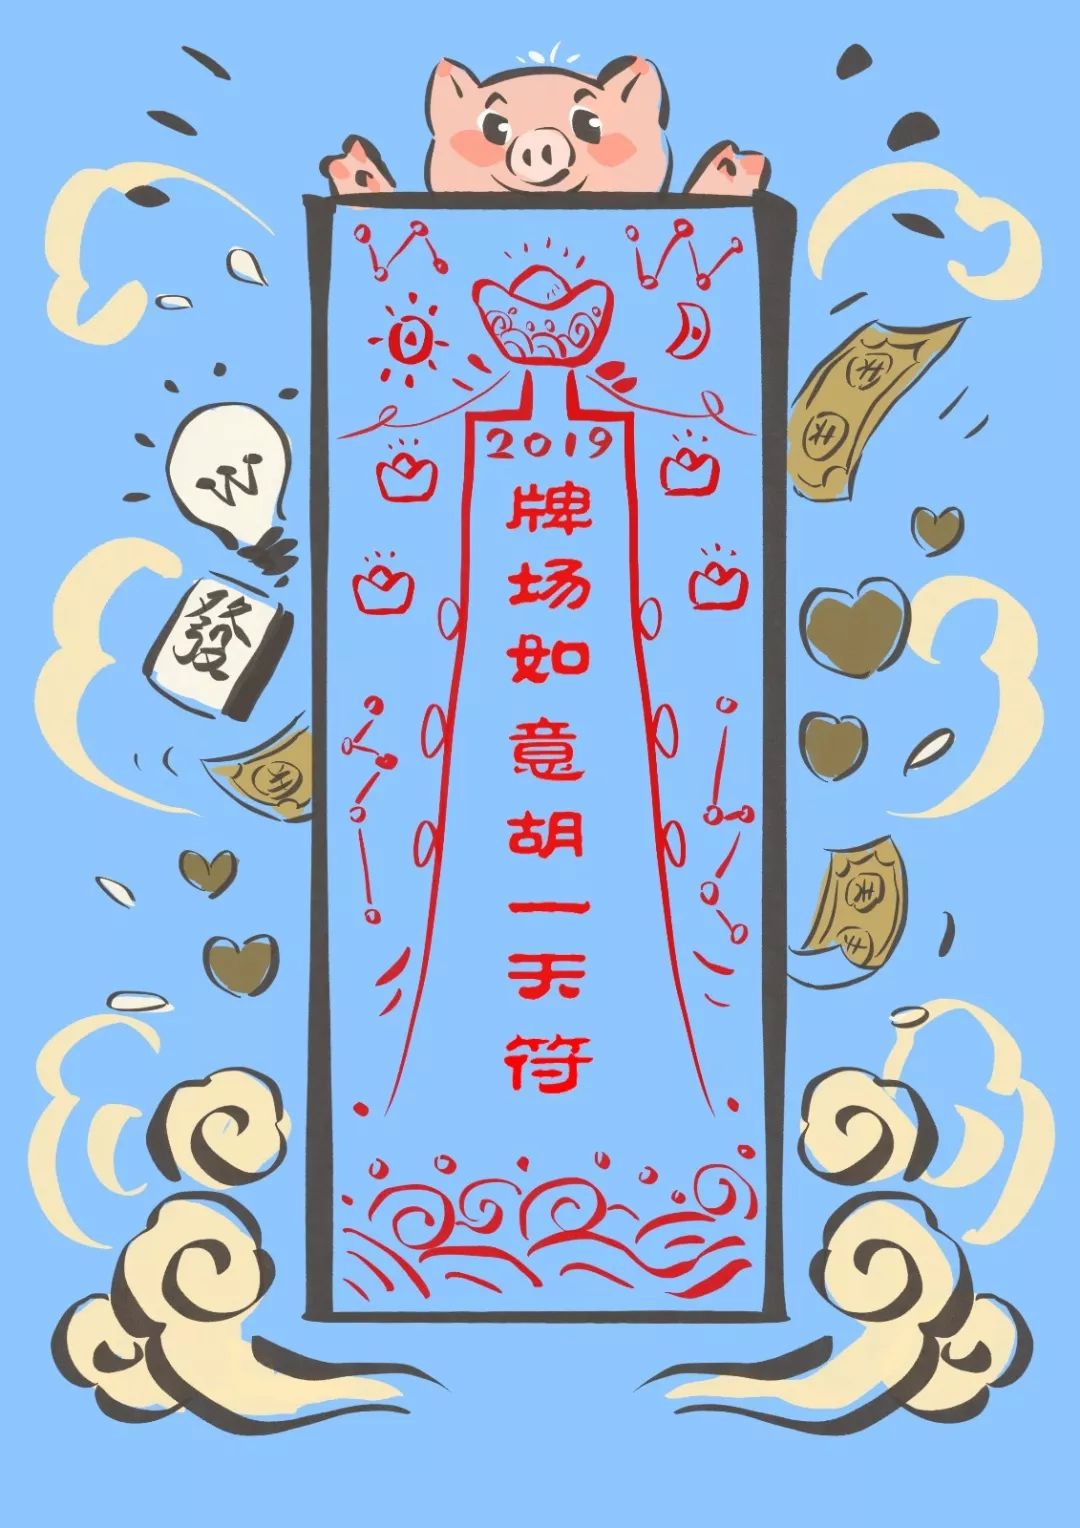 中国风插画喜庆玄学极繁高饱和爆单符祈福海报_美图设计室海报模板素材大全